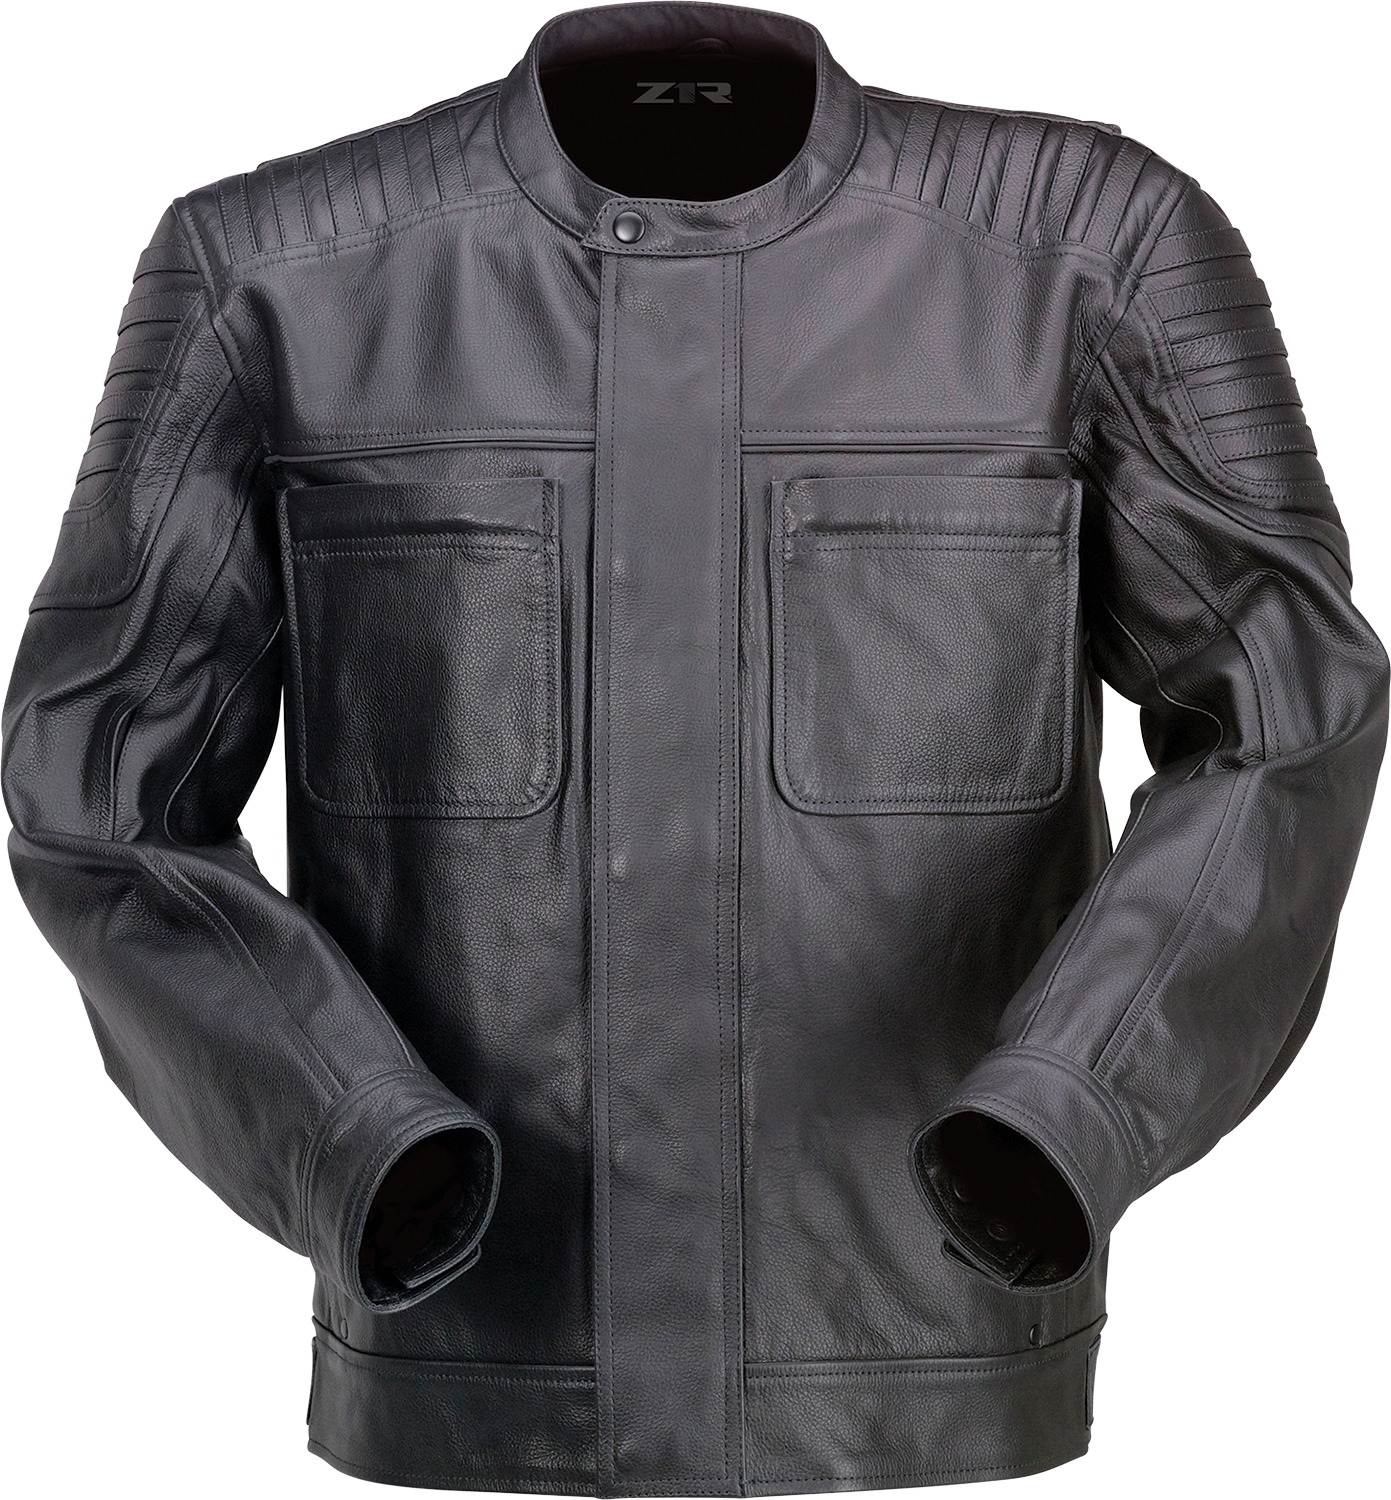 Z1R Widower Leather Jacket - Black - 5XL 2810-3976